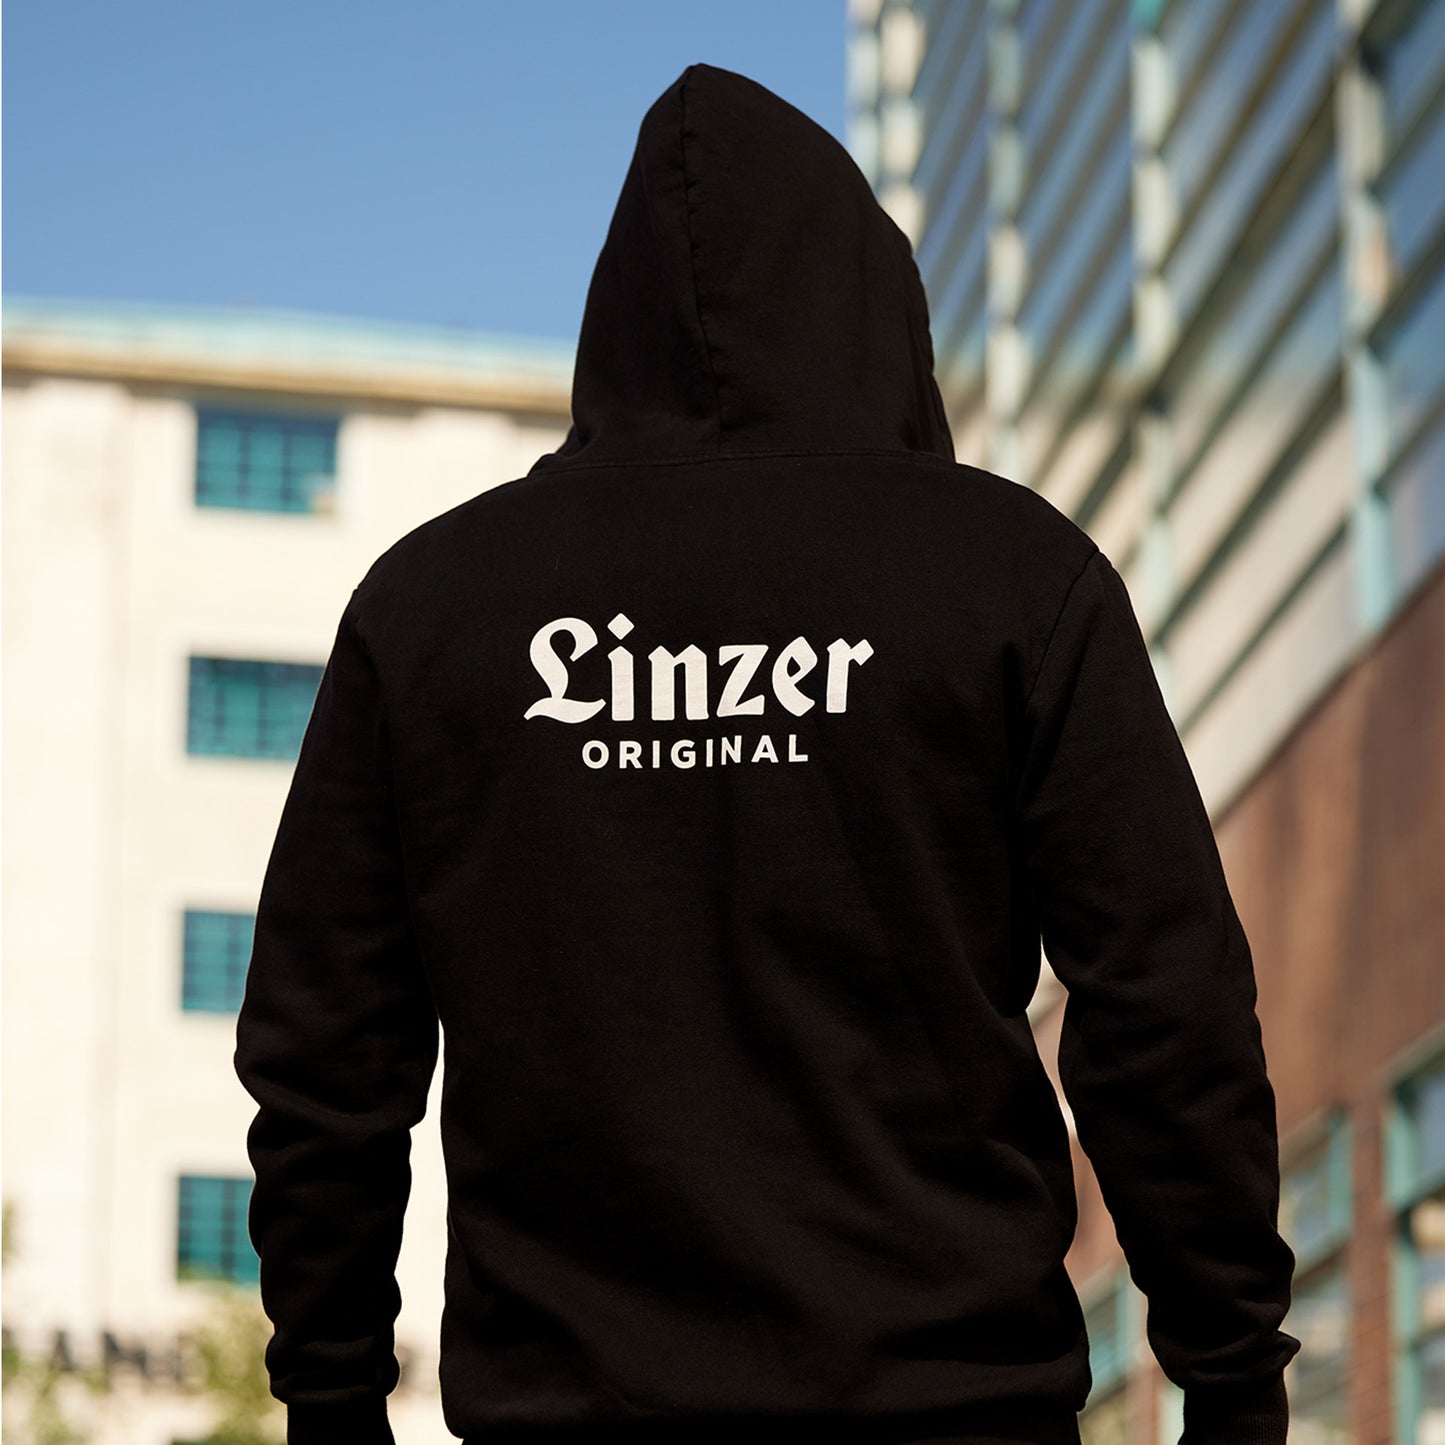 Zip-Hoodie "Linzer Original"